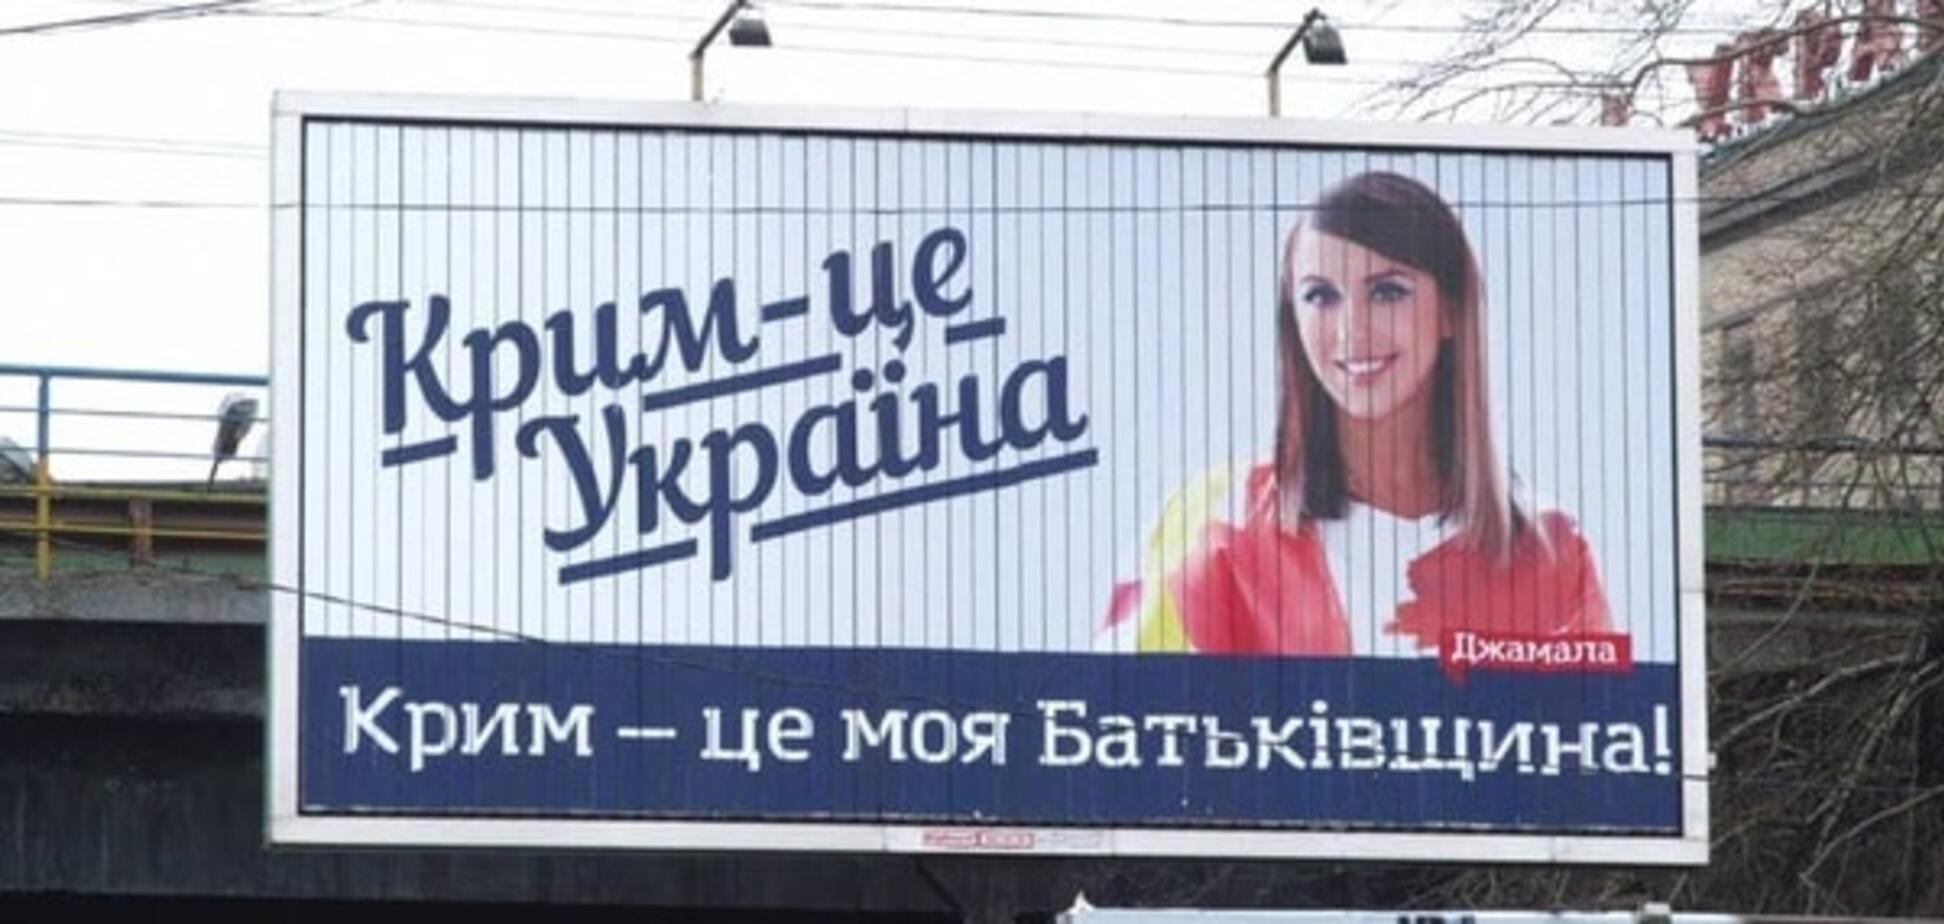 Це ганьба: Іслямов розкритикував бордову кампанію 'Крим - це Україна'